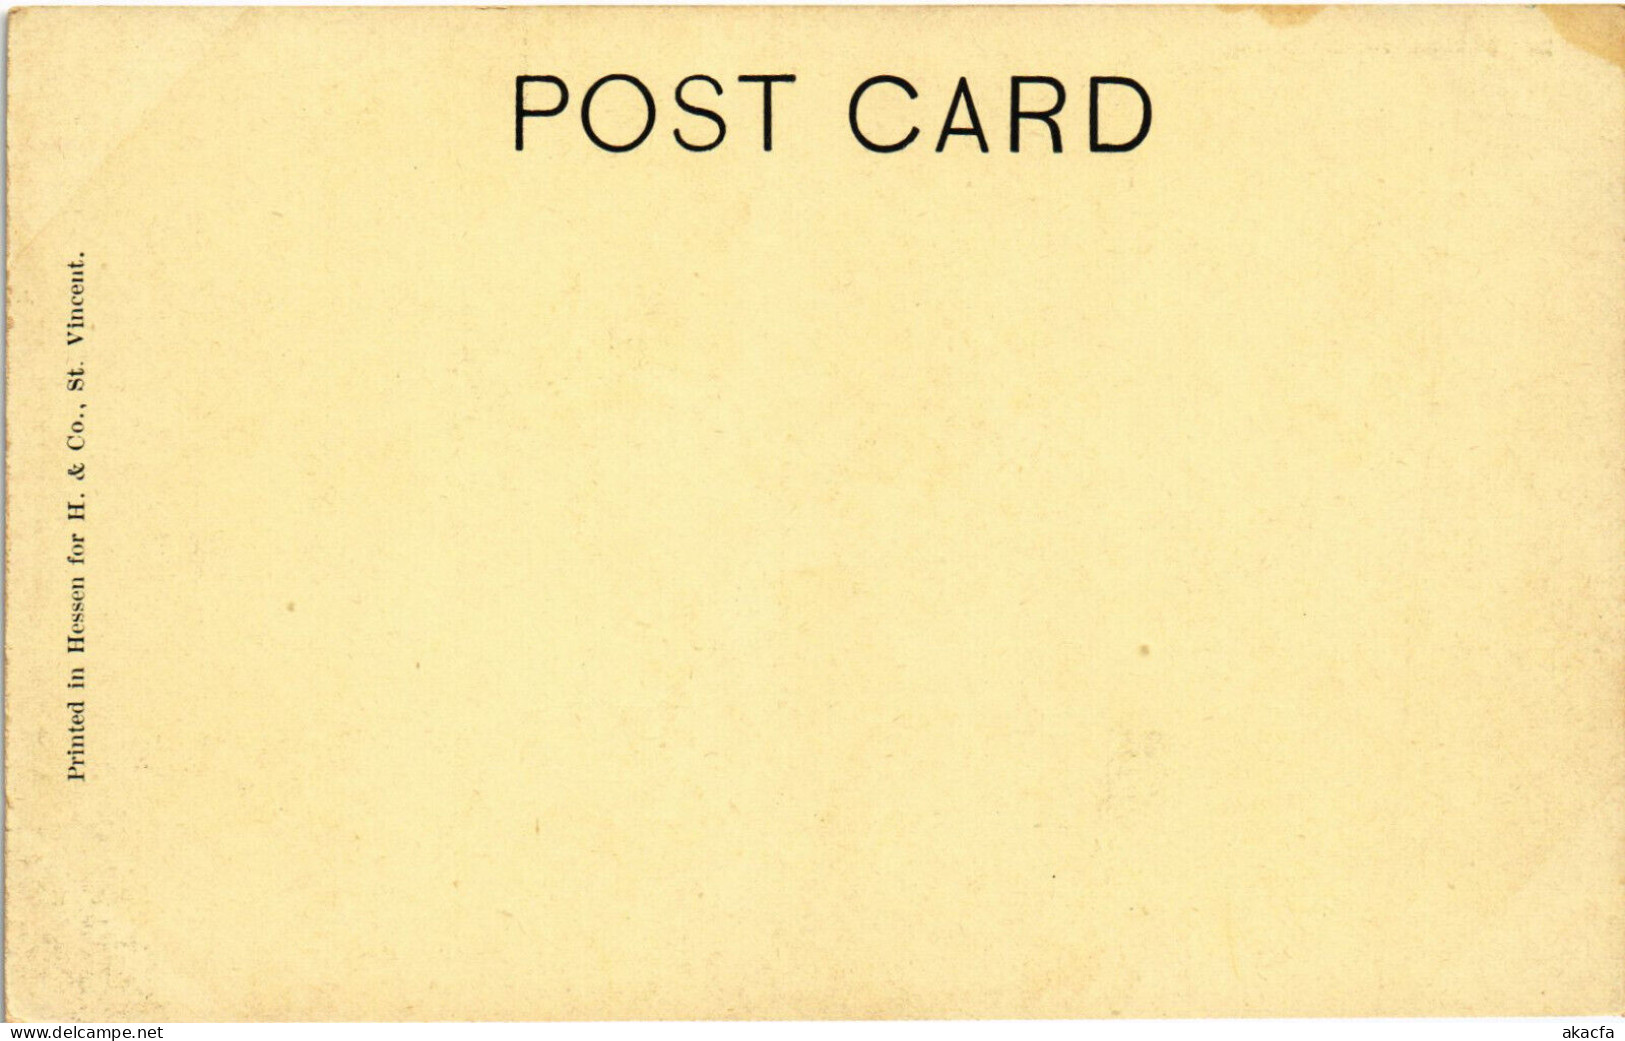 PC VIRGIN ISLANDS MARINE VIEW SPRING Vintage Postcard (b52260) - Jungferninseln, Britische